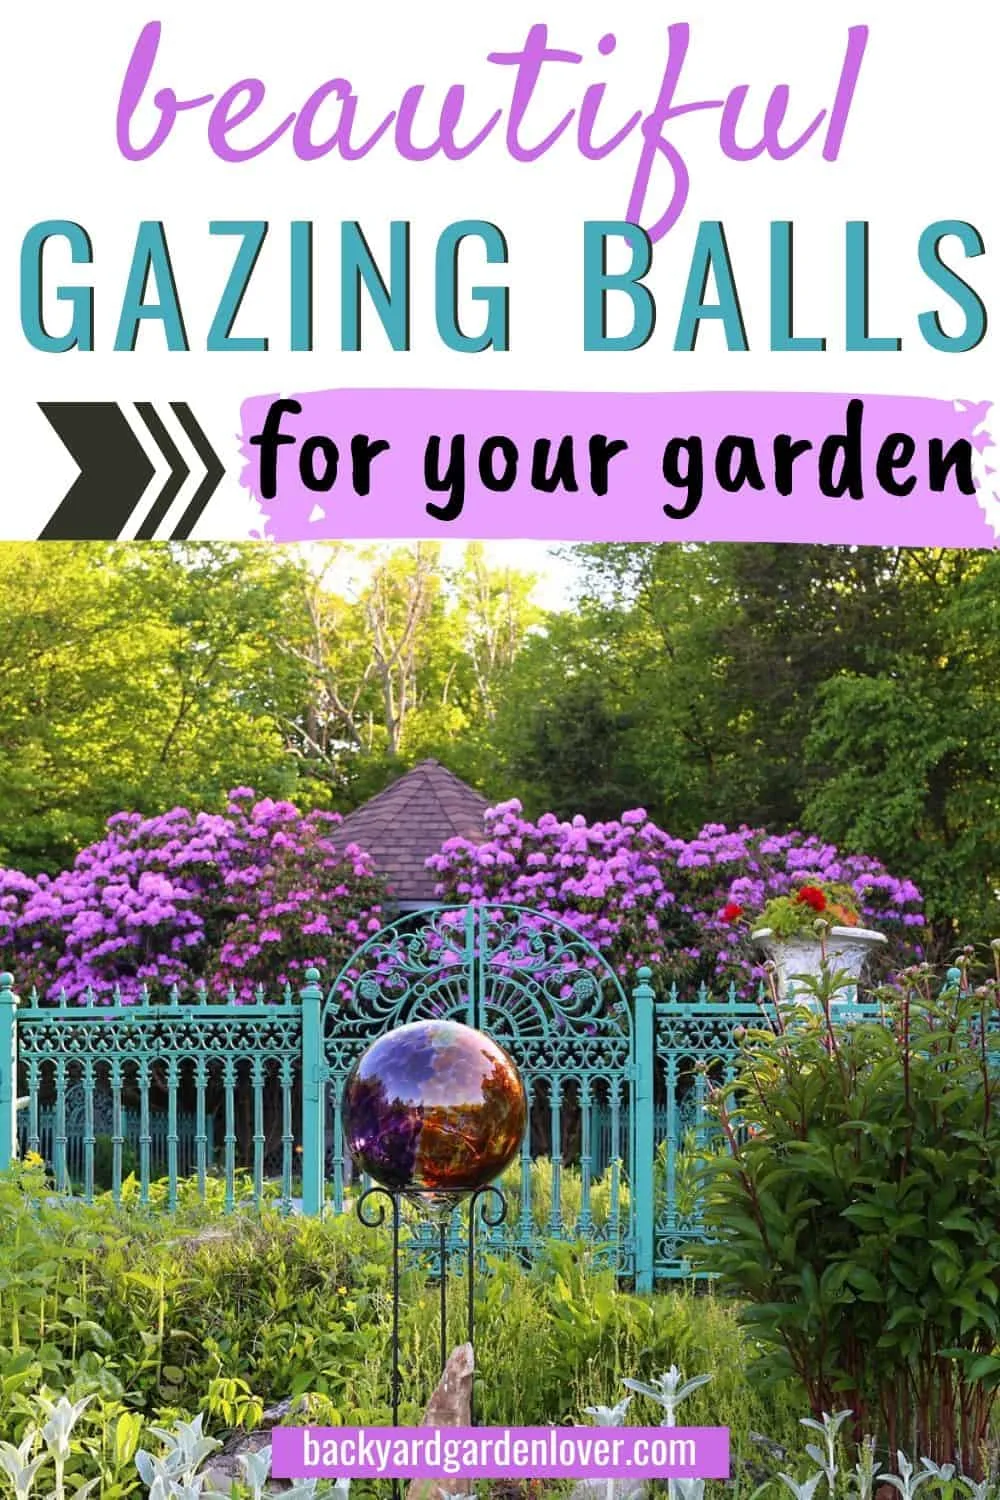 Beautiful gazing balls for your garden